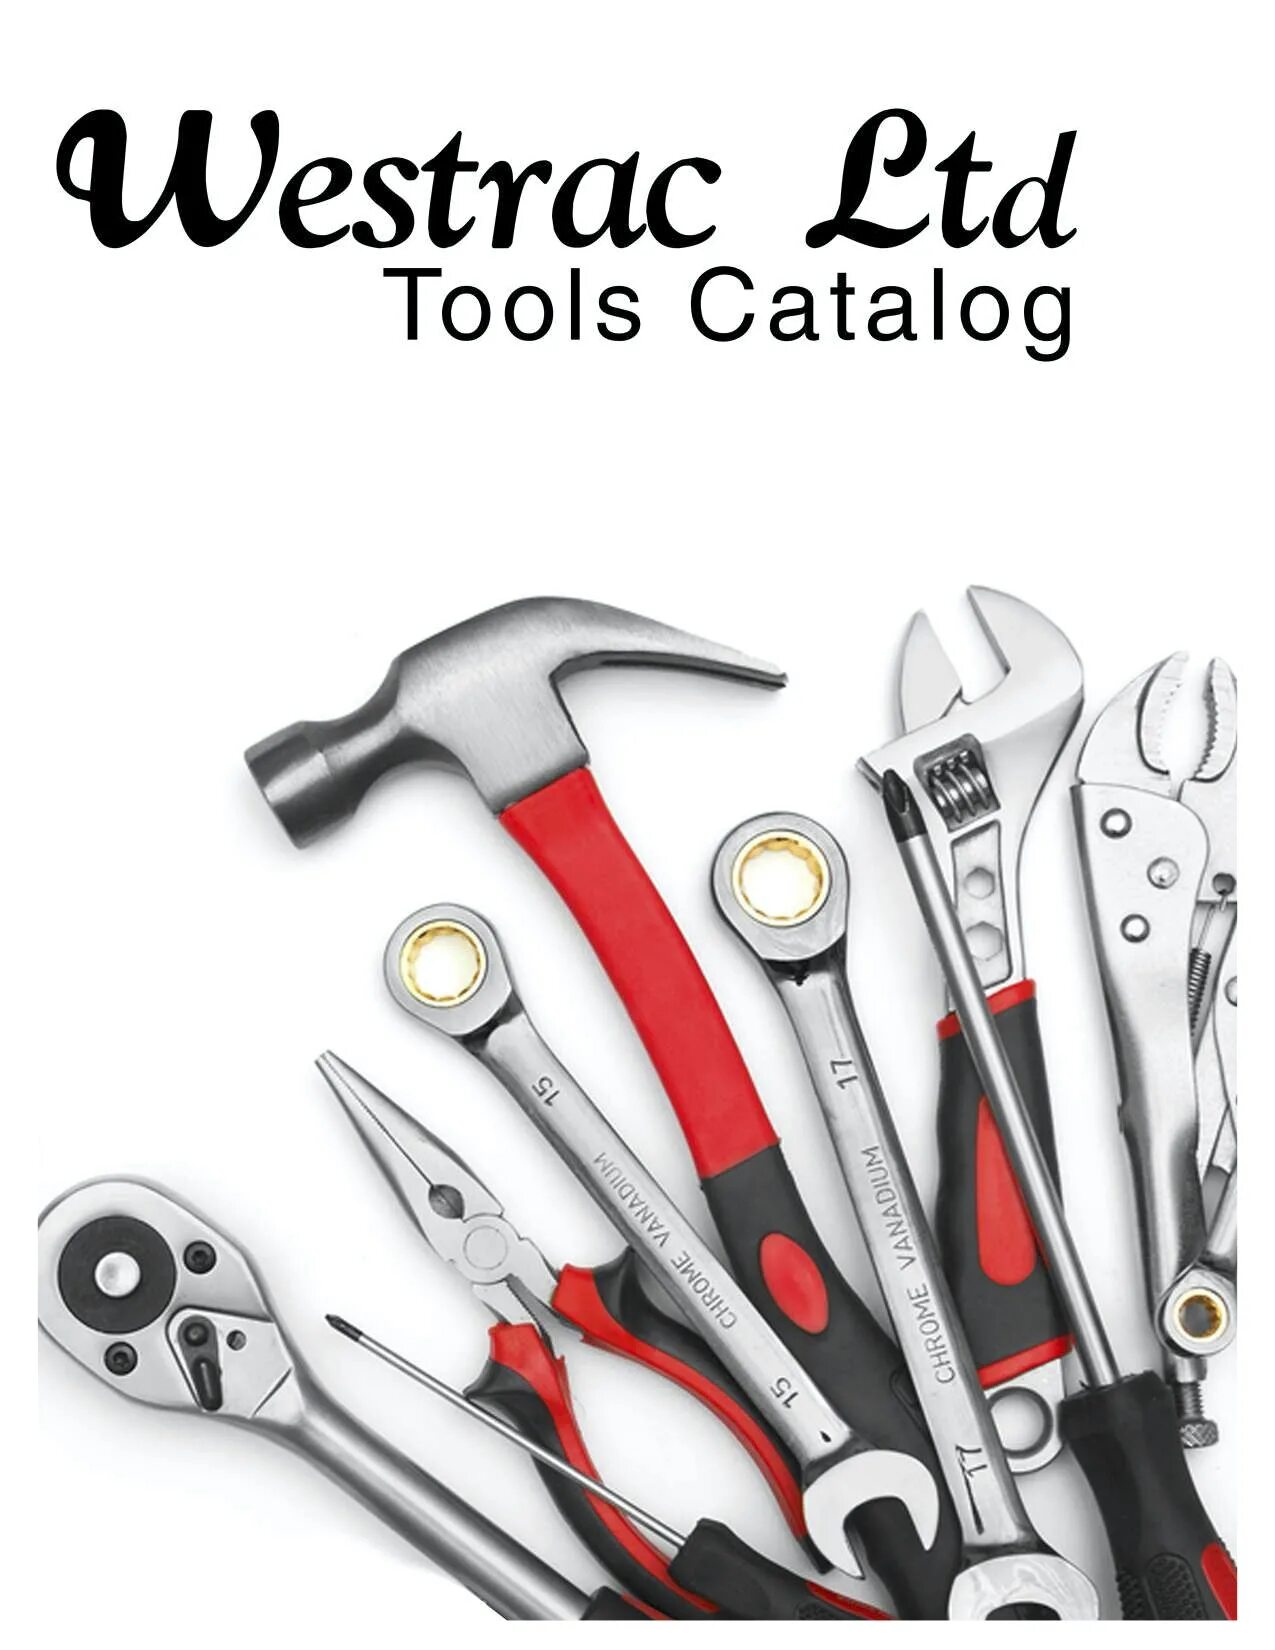 Tools py. Строительные инструменты. Ручной инструмент. Слесарный инструмент. Инструменты для ремонта.